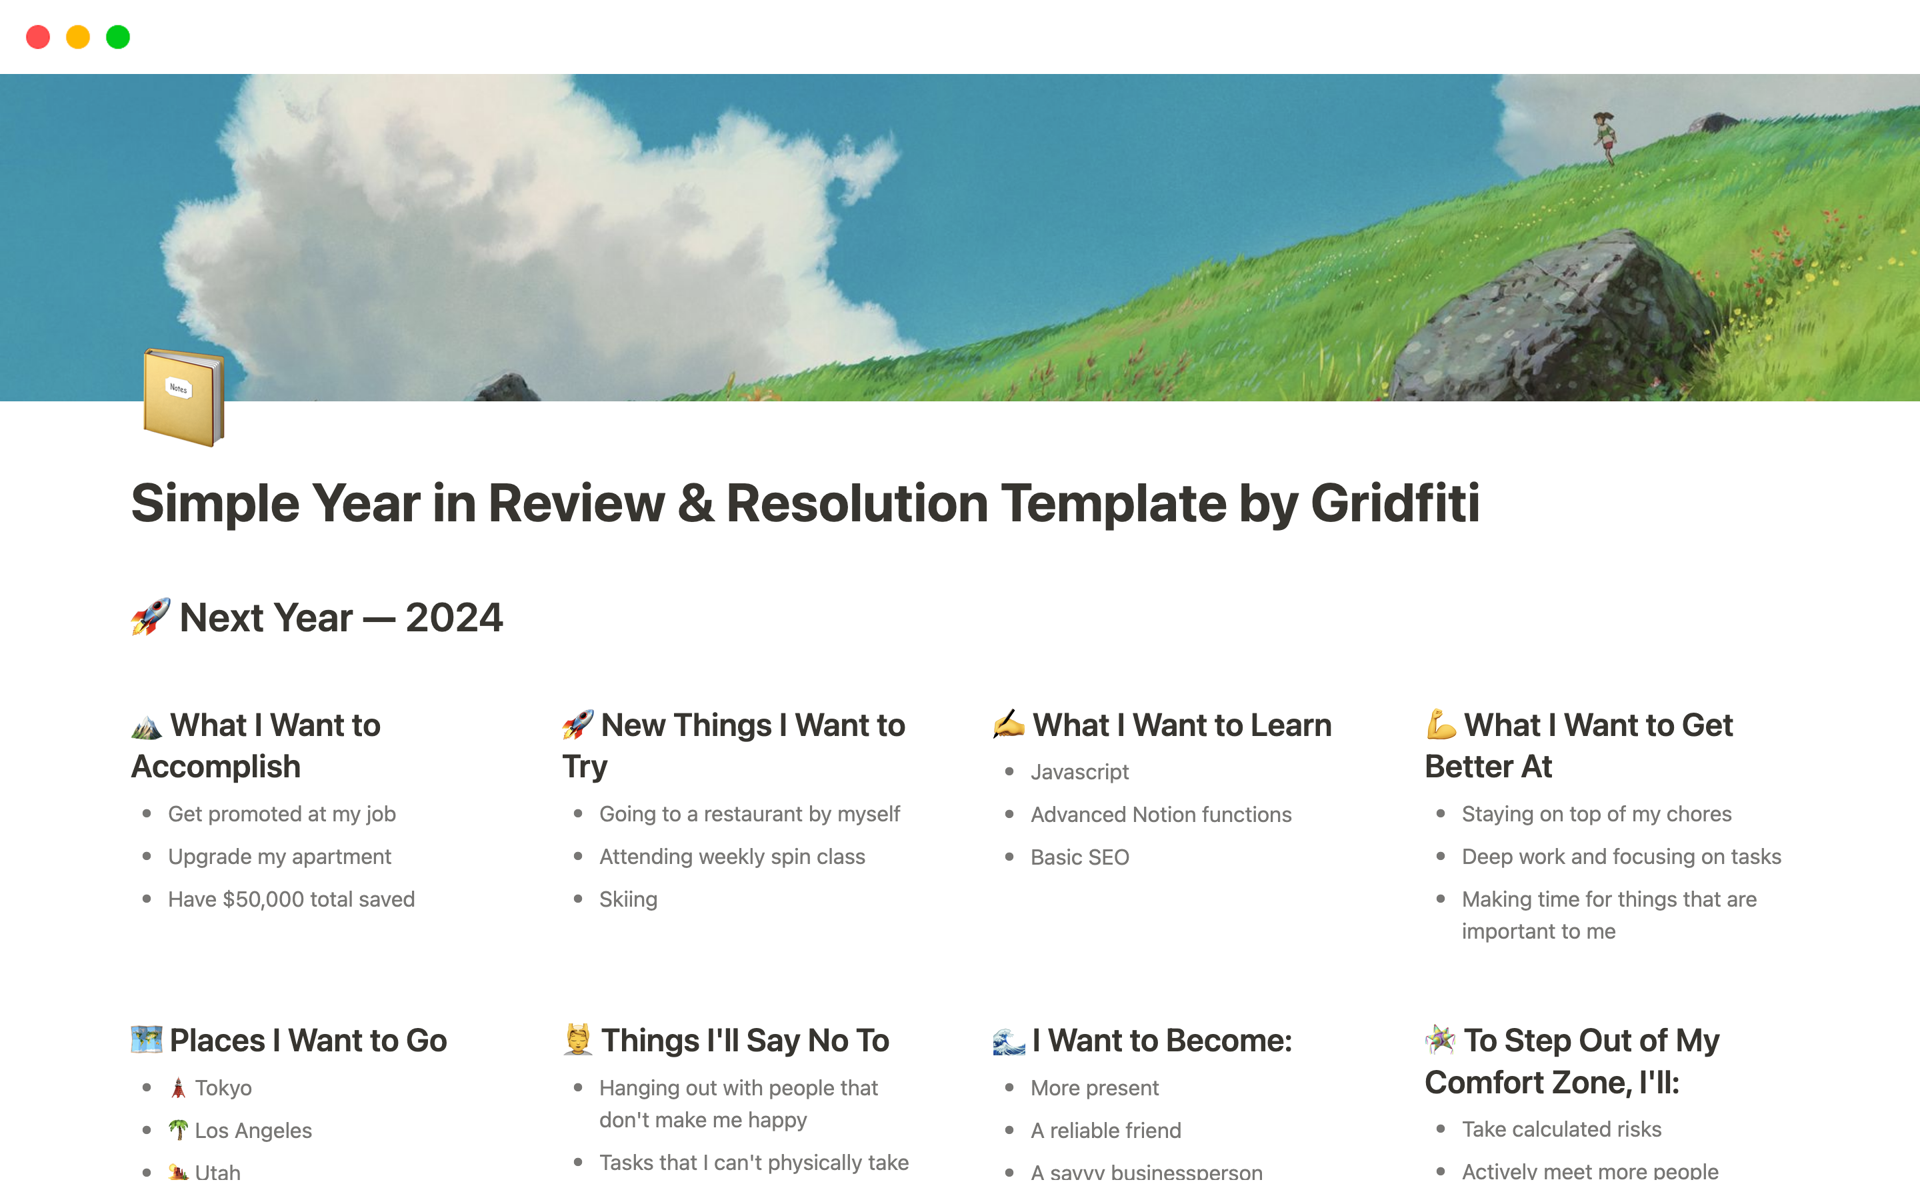 Aperçu du modèle de Simple Year in Review & Resolution Template